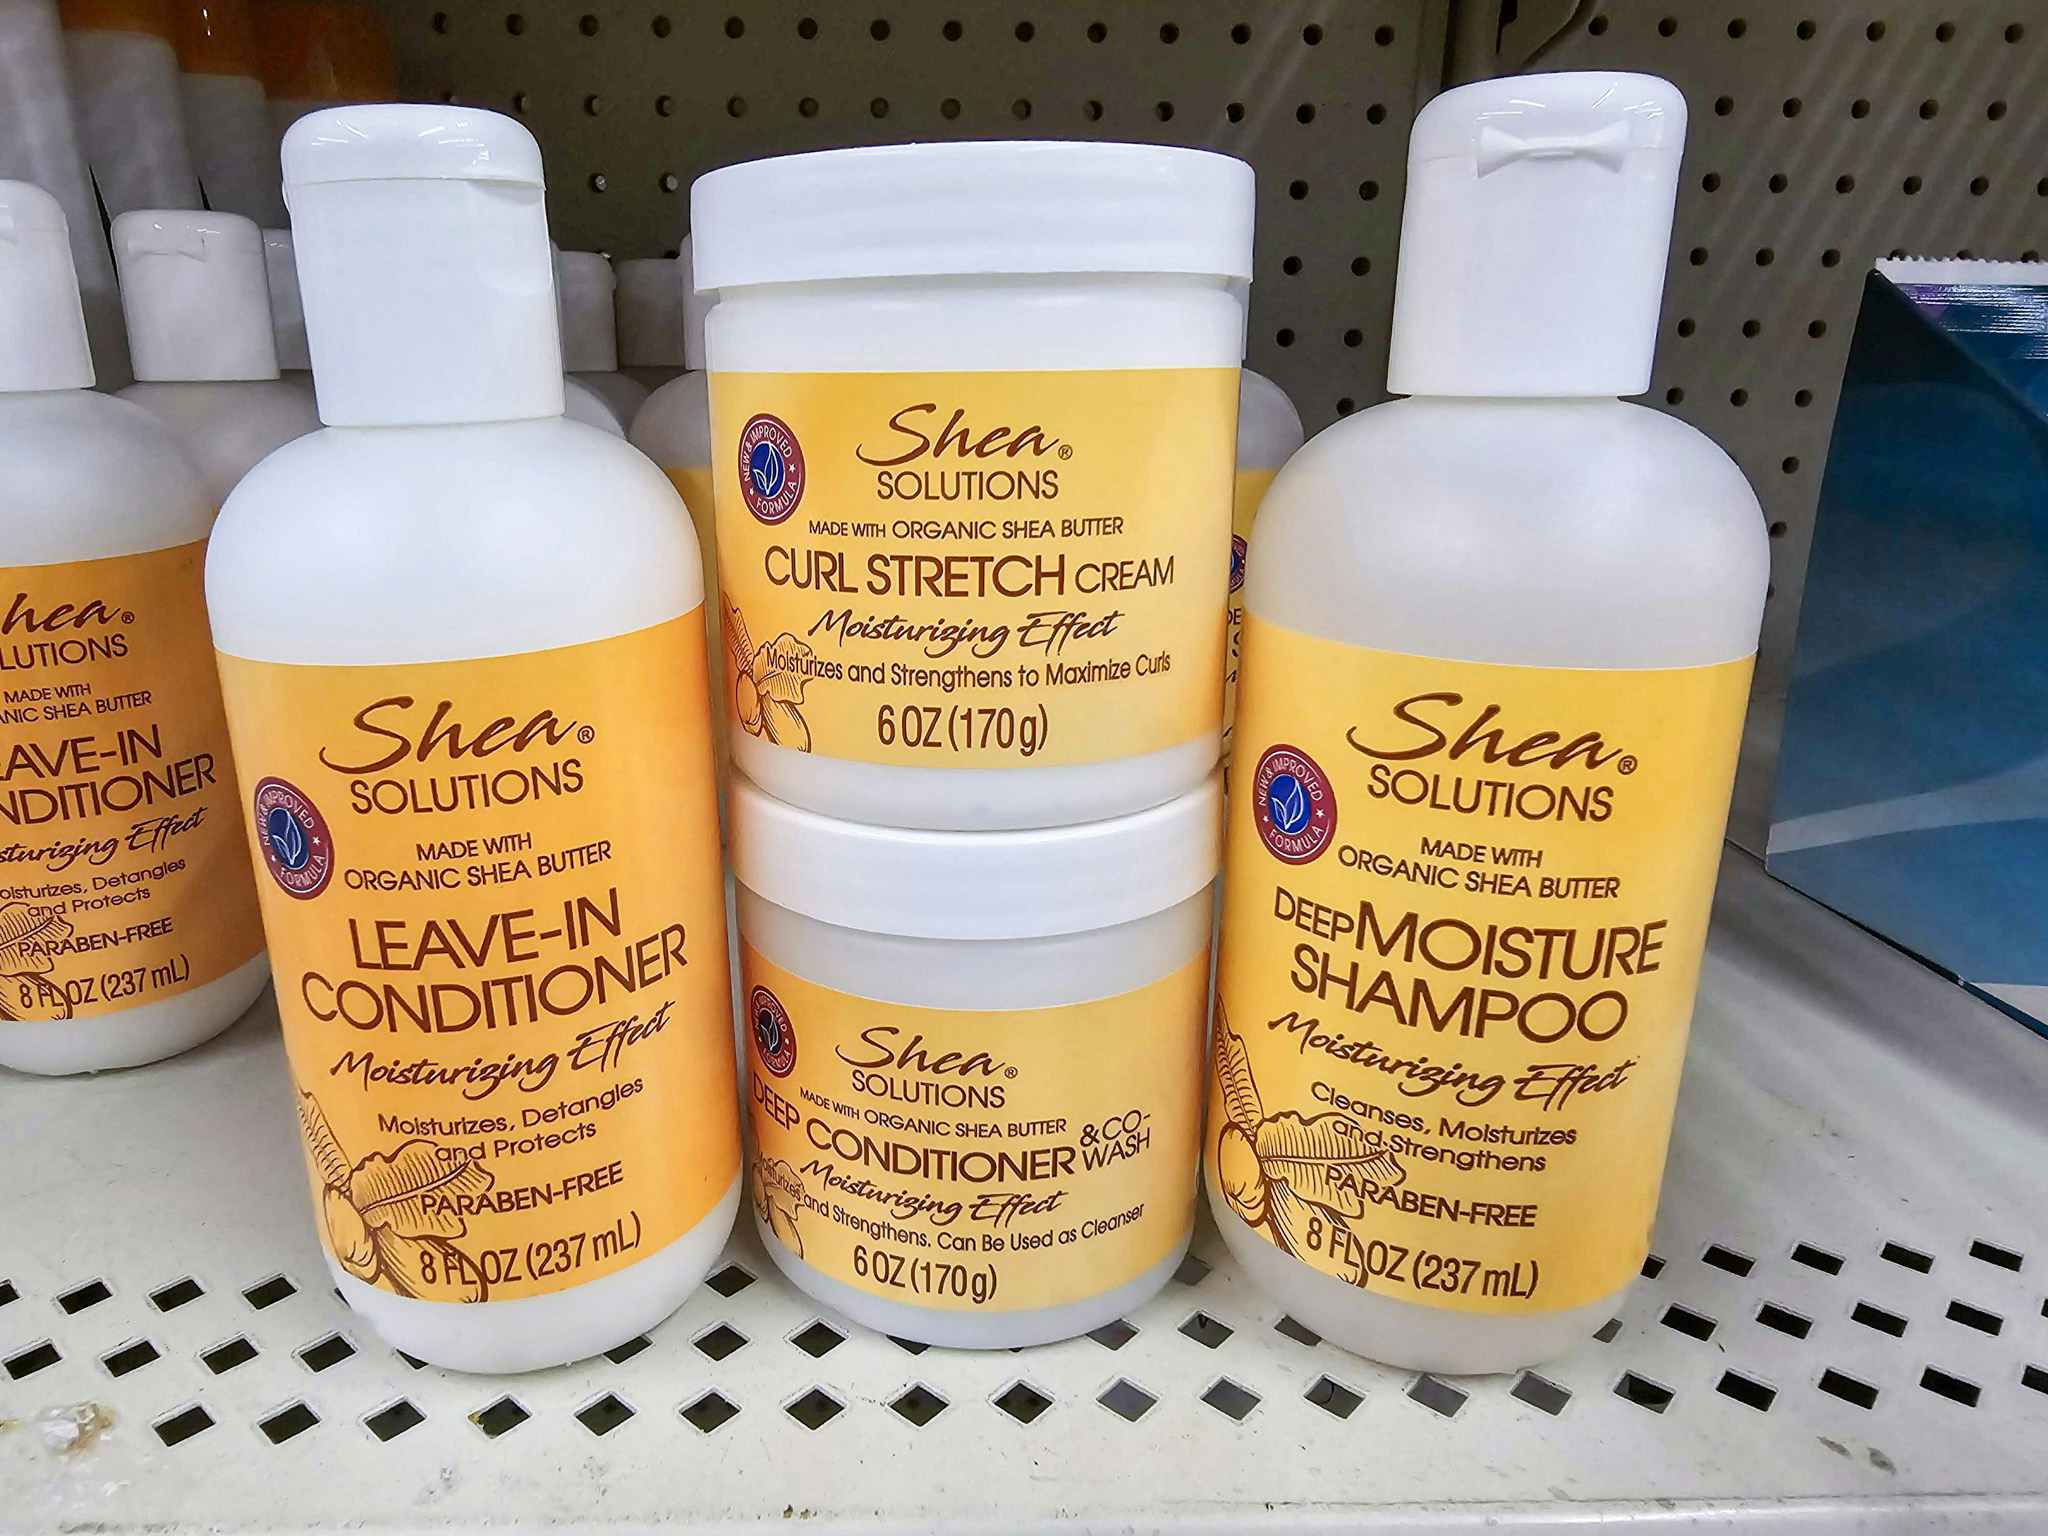 shea hair care on a shelf